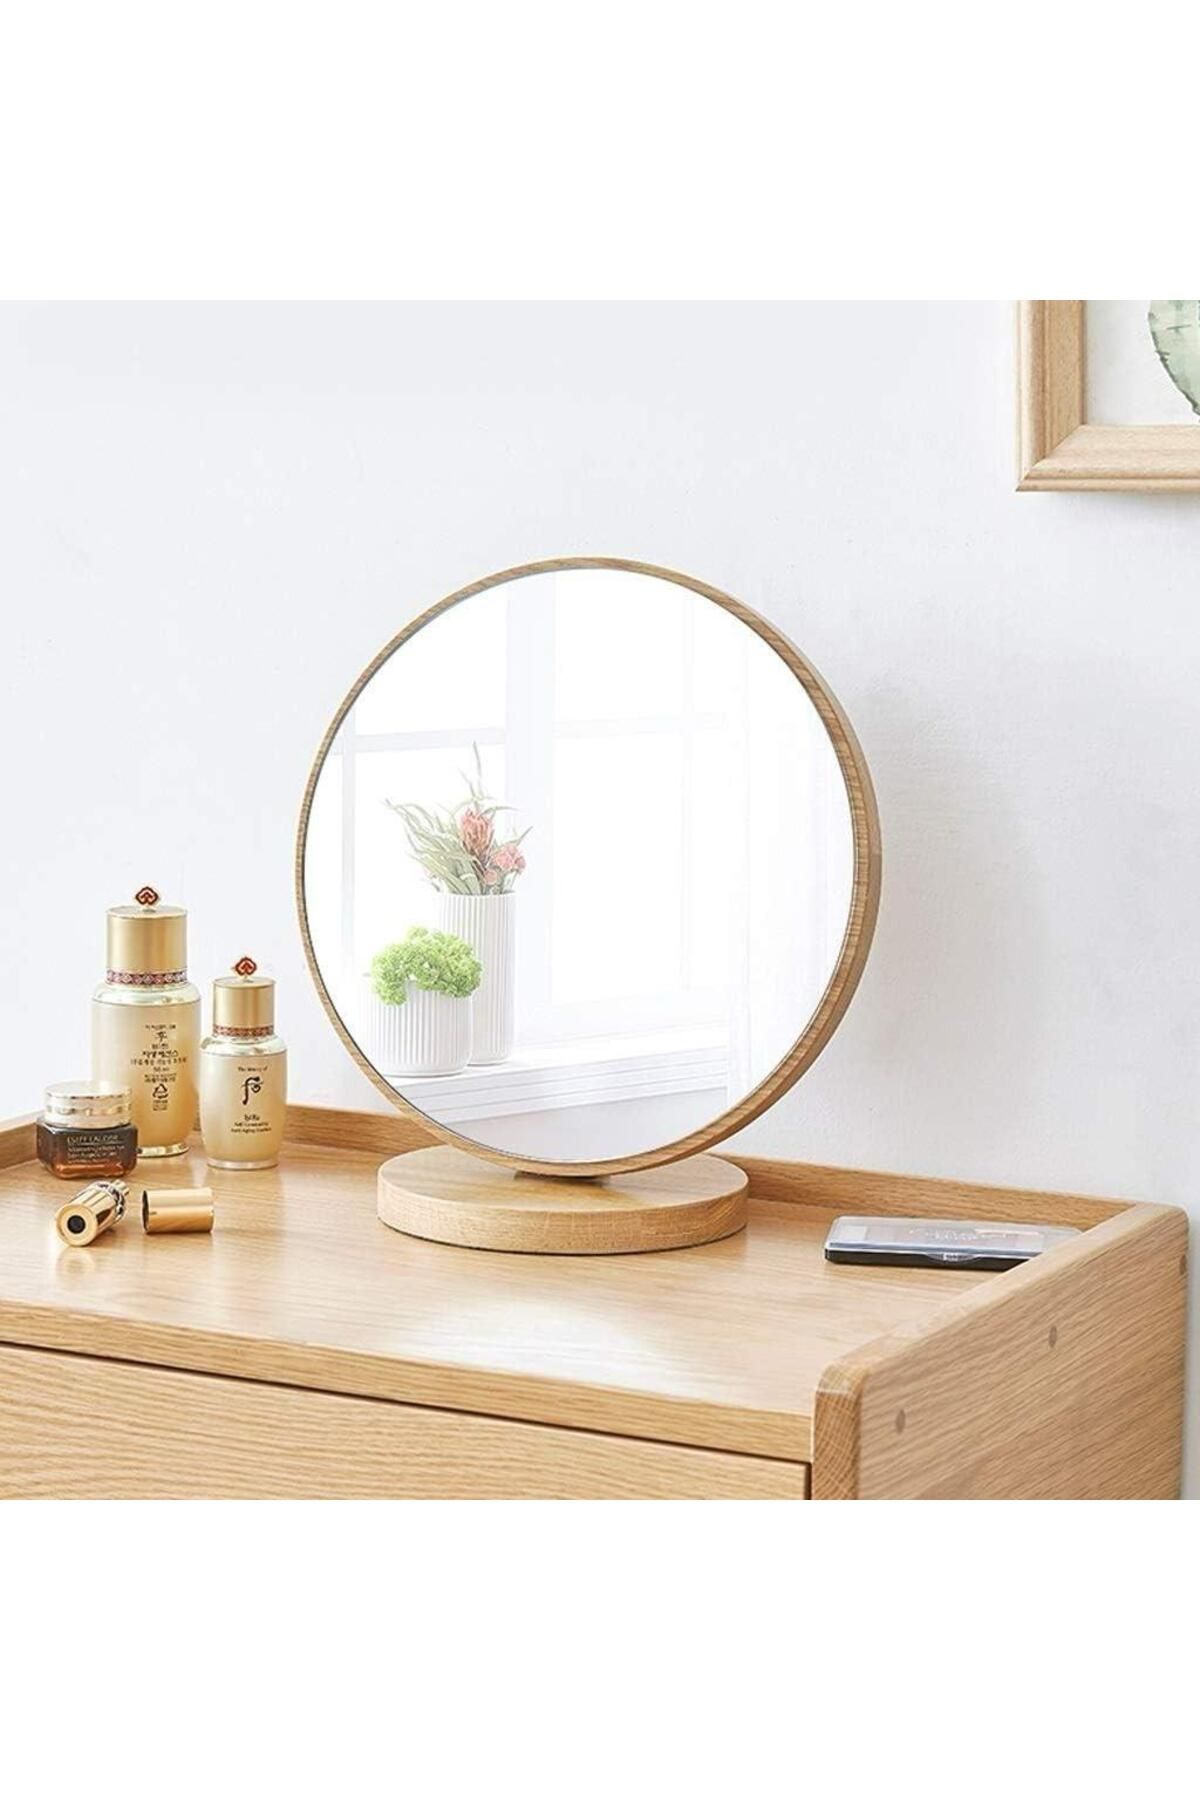 gaman Yuvarlak 90° Hareketli Ahşap Ayna Yeni Tasarım Modern Masaüstü Banyo Ayna